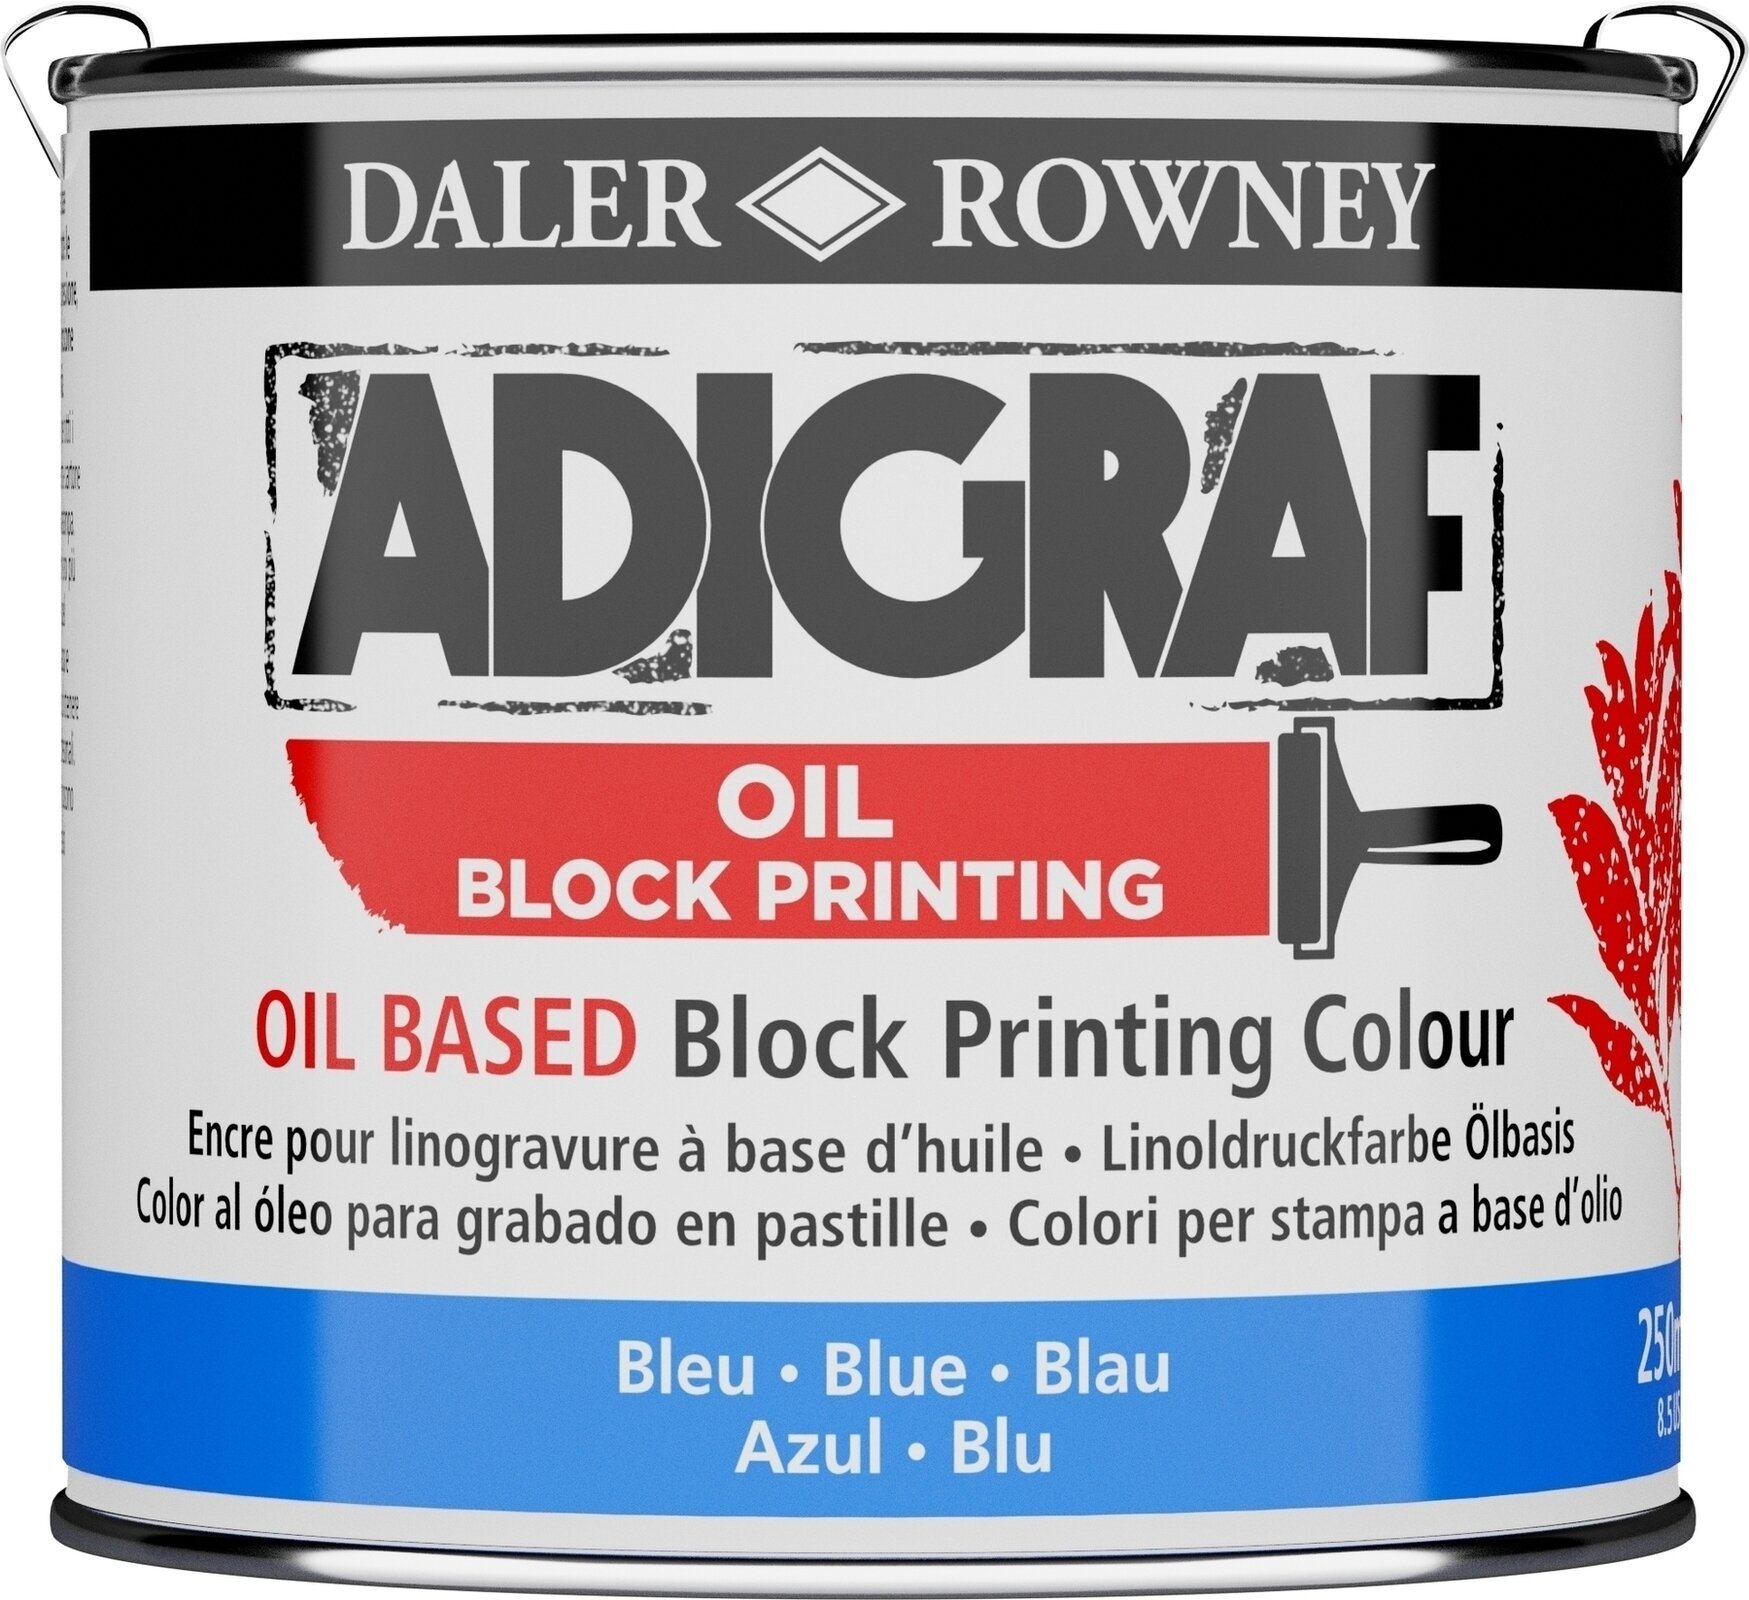 Verf voor linosnede Daler Rowney Adigraf Block Printing Oil Verf voor linosnede Blue 250 ml